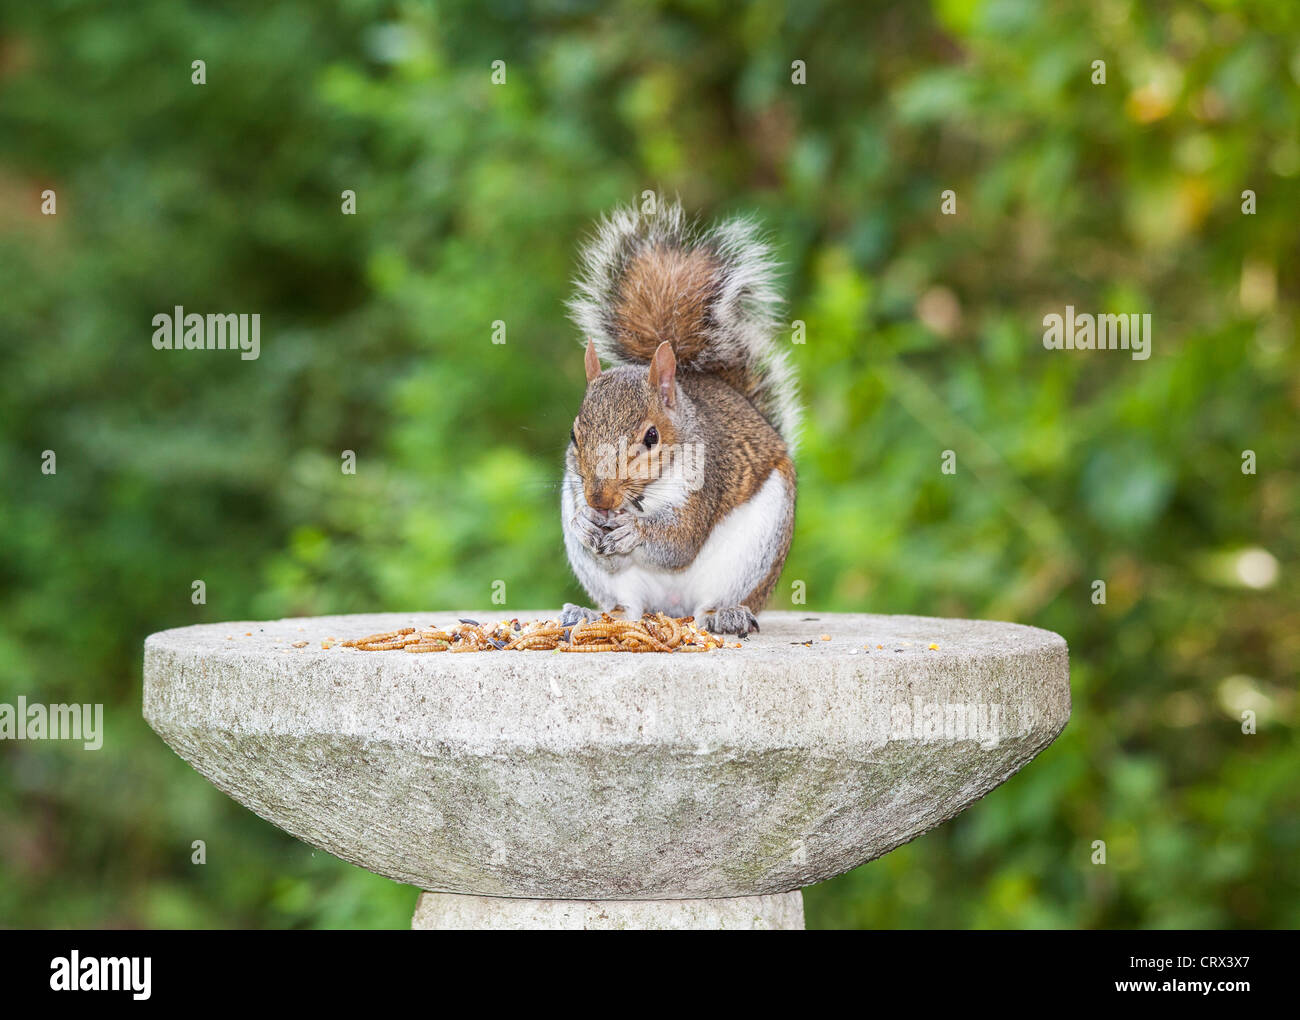 L'écureuil gris (Sciurus carolinensis) sur le tableau d'oiseaux en pierre de manger des aliments laissés de côté pour les oiseaux dans un jardin anglais Banque D'Images